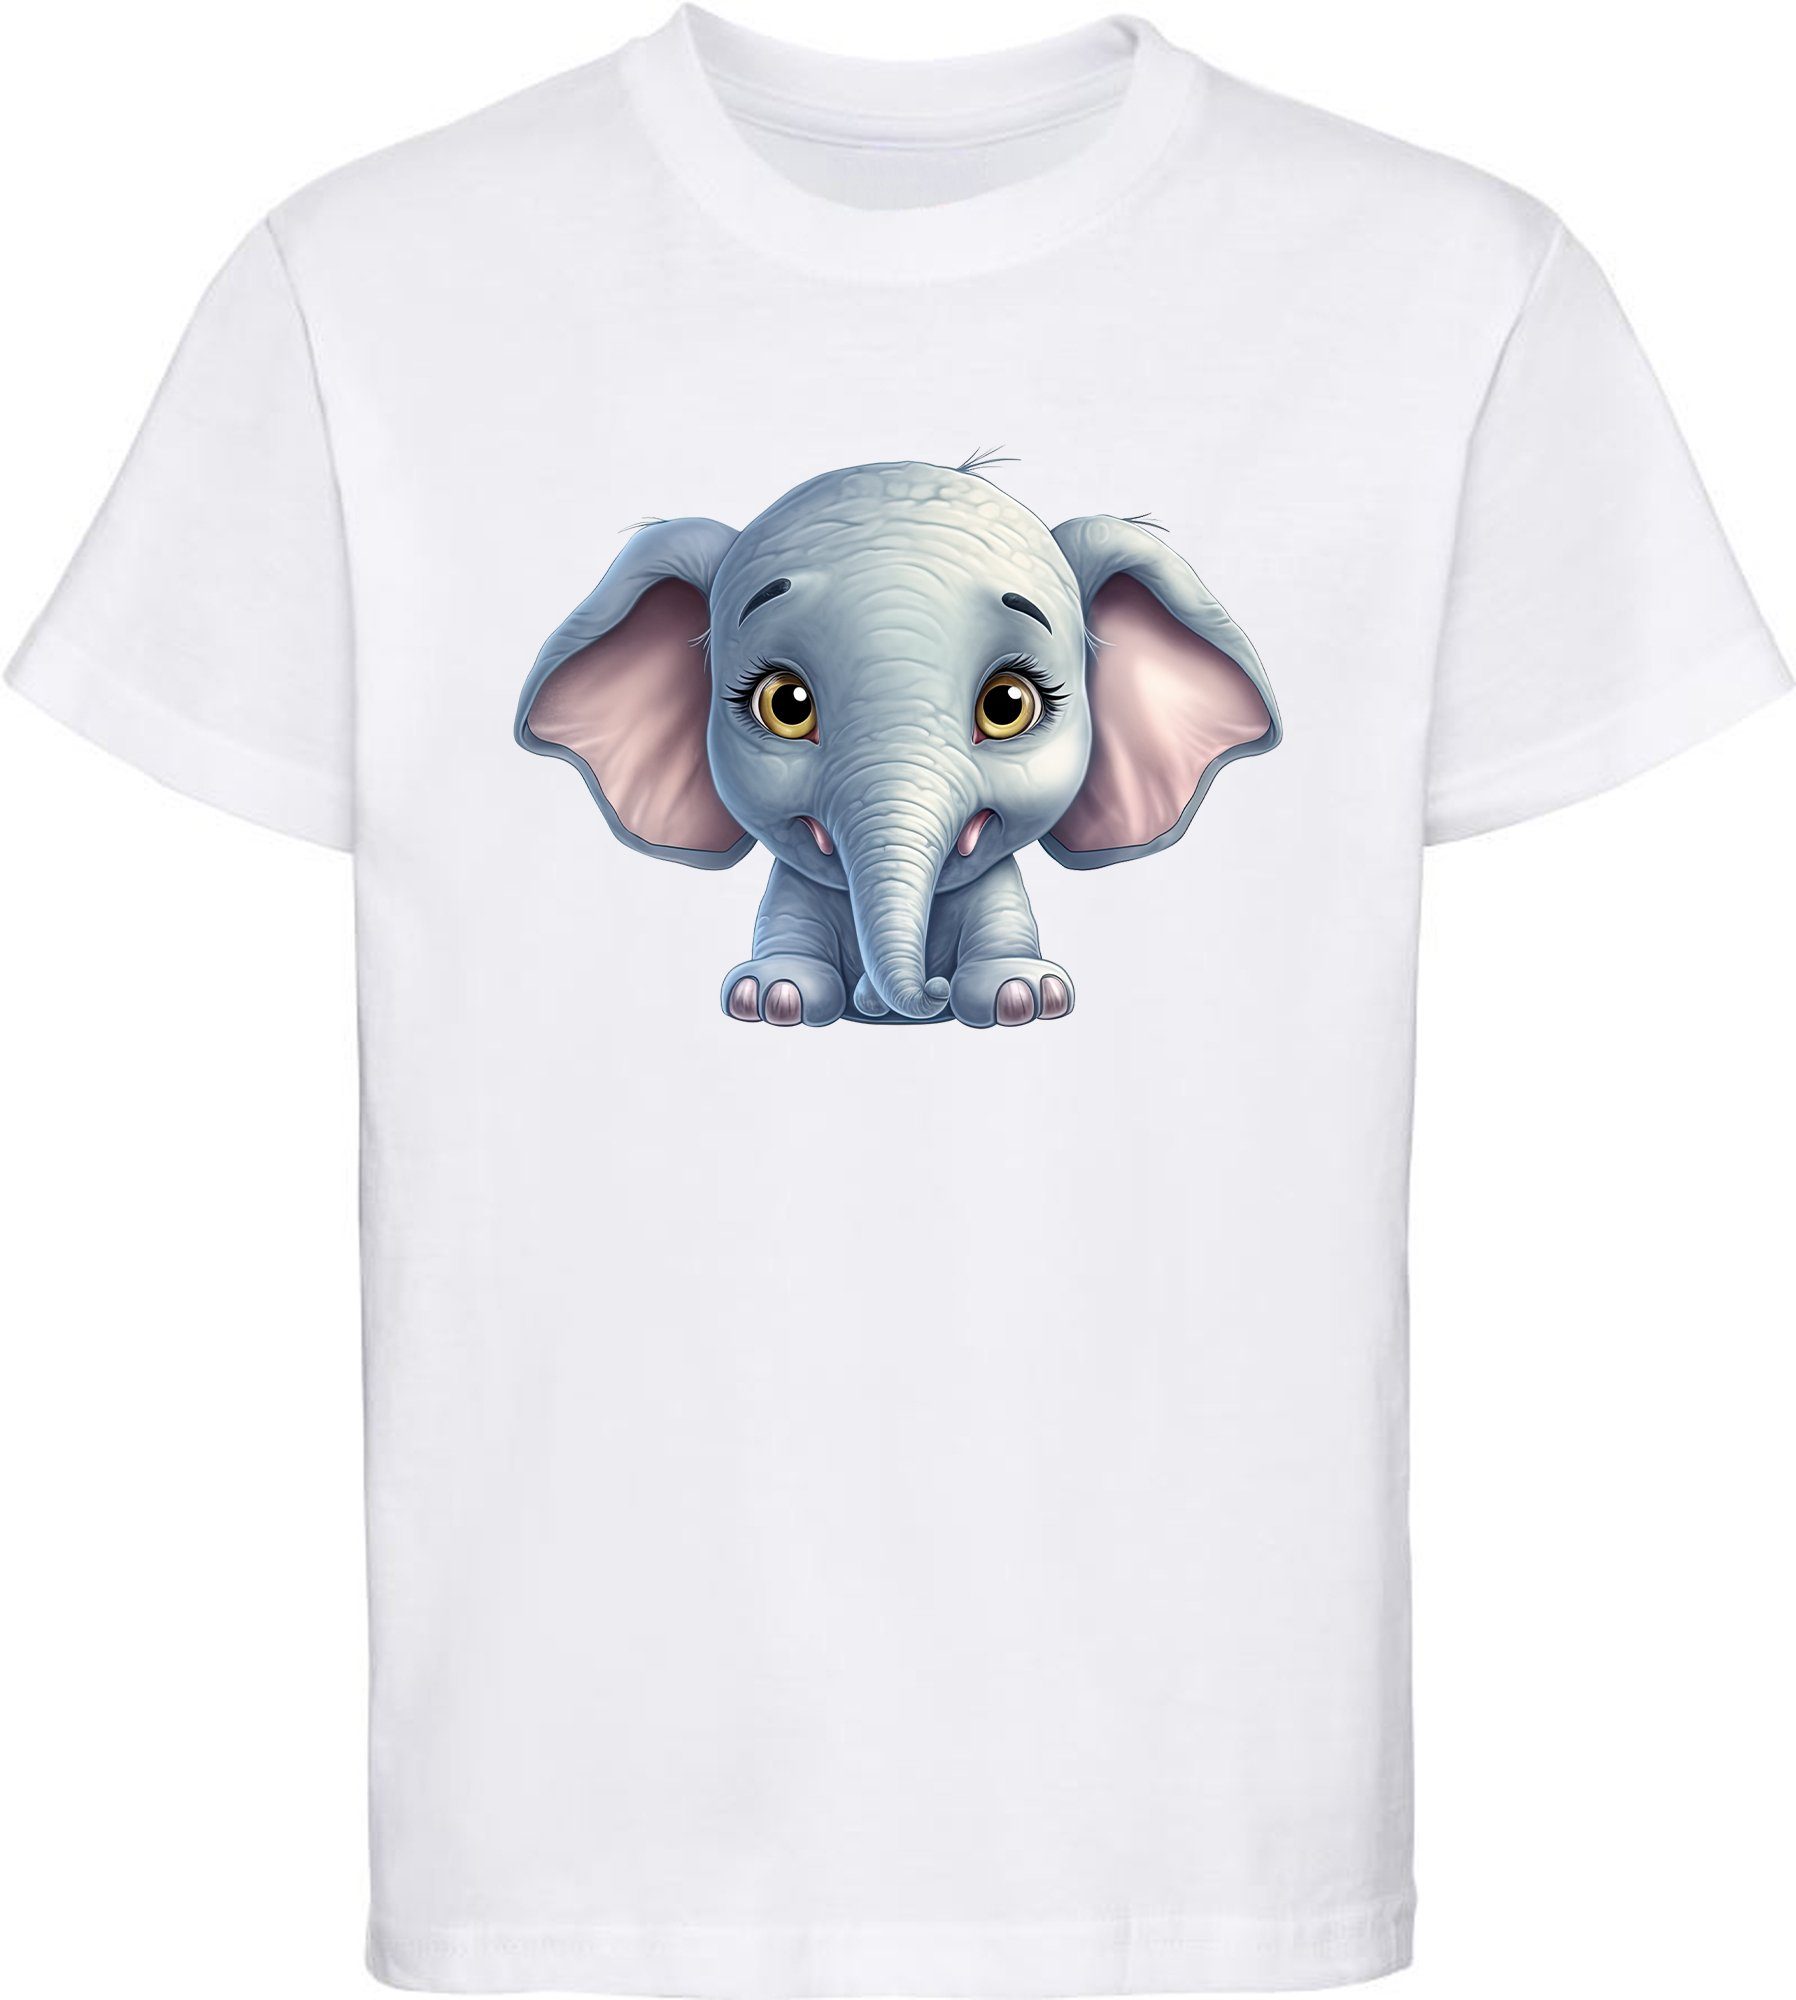 MyDesign24 T-Shirt Kinder Wildtier Print Shirt bedruckt - Baby Elefant Baumwollshirt mit Aufdruck, i272 weiss